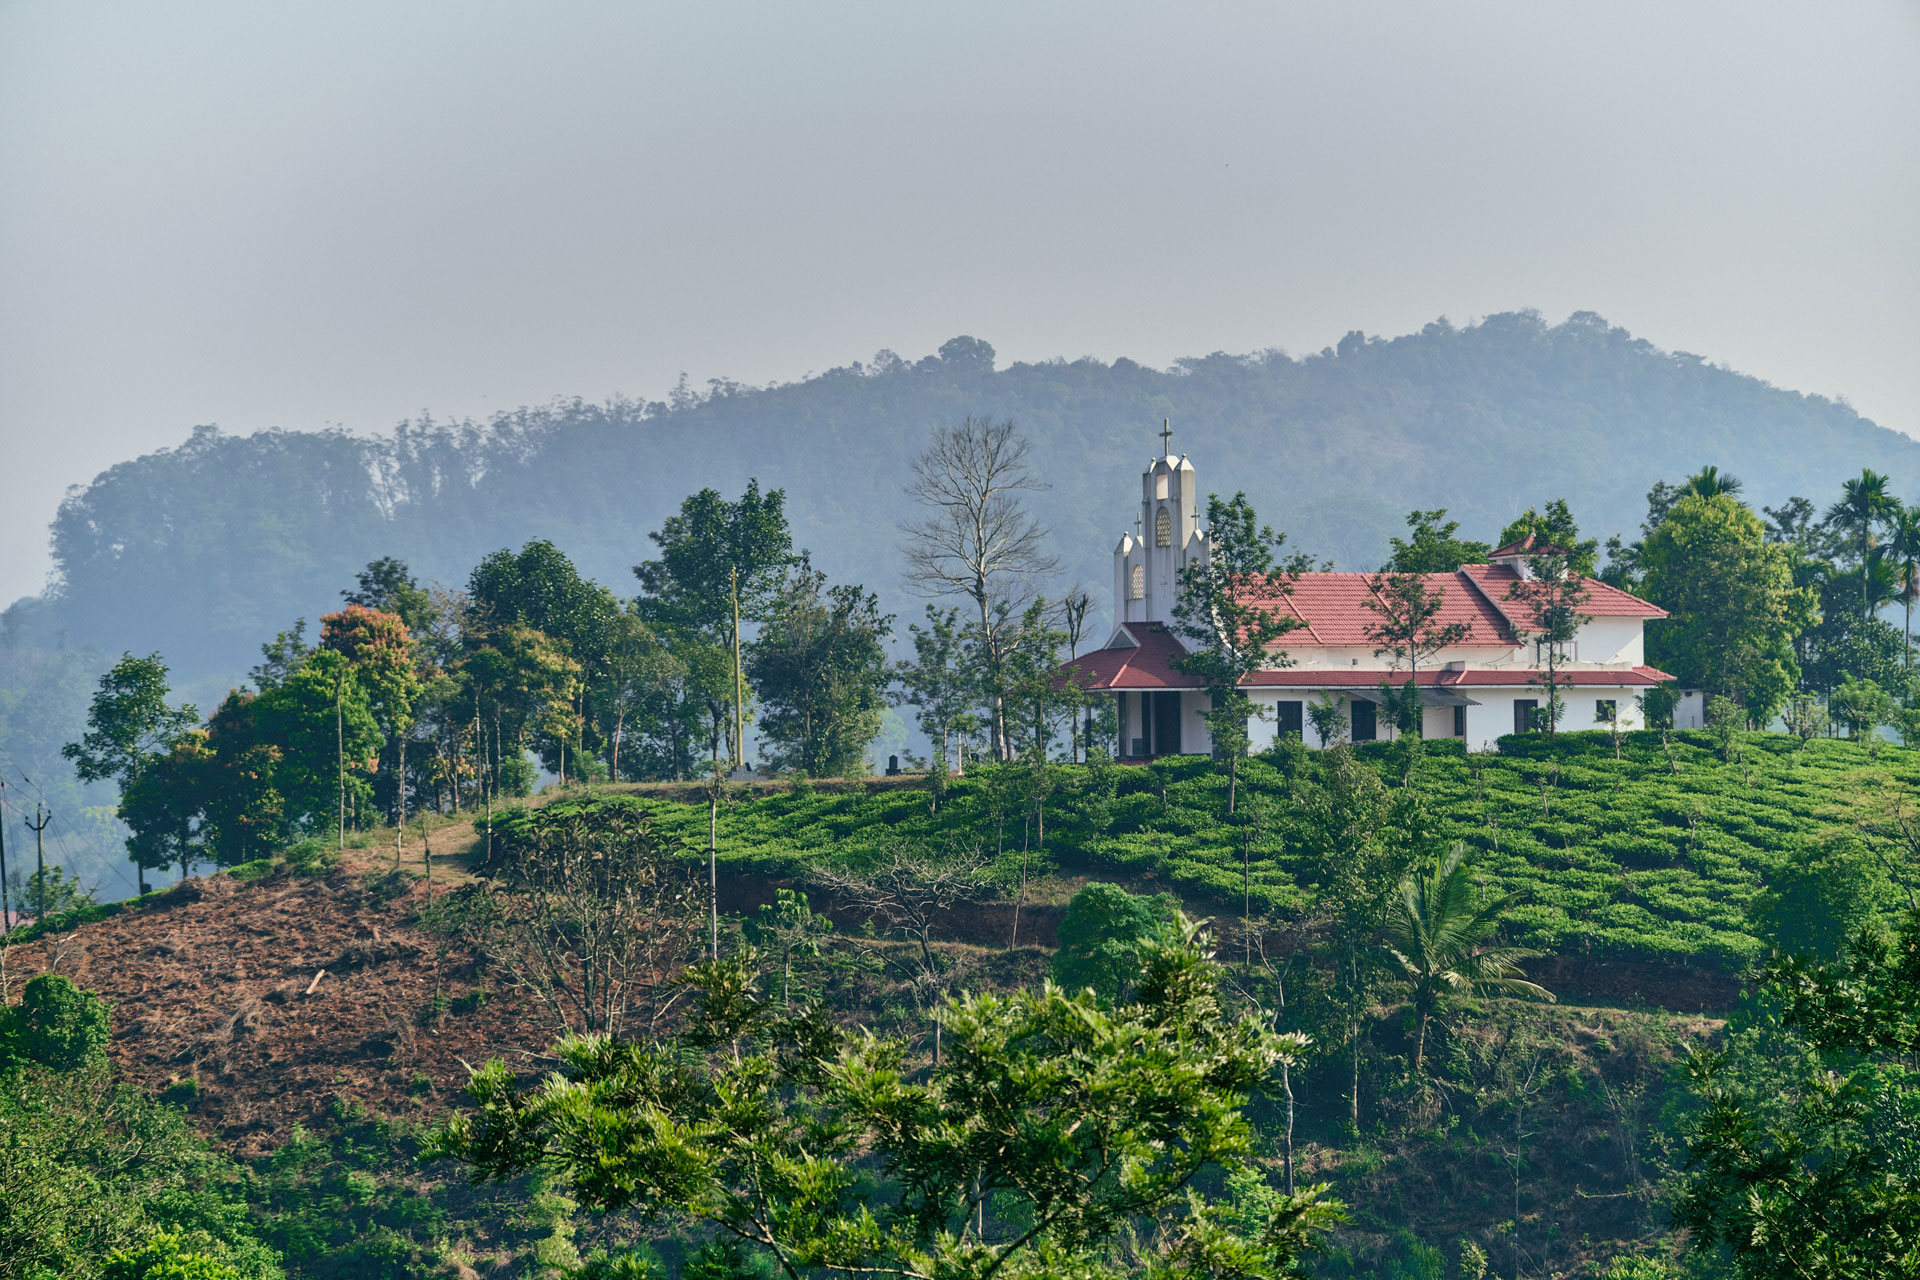 Tea farming